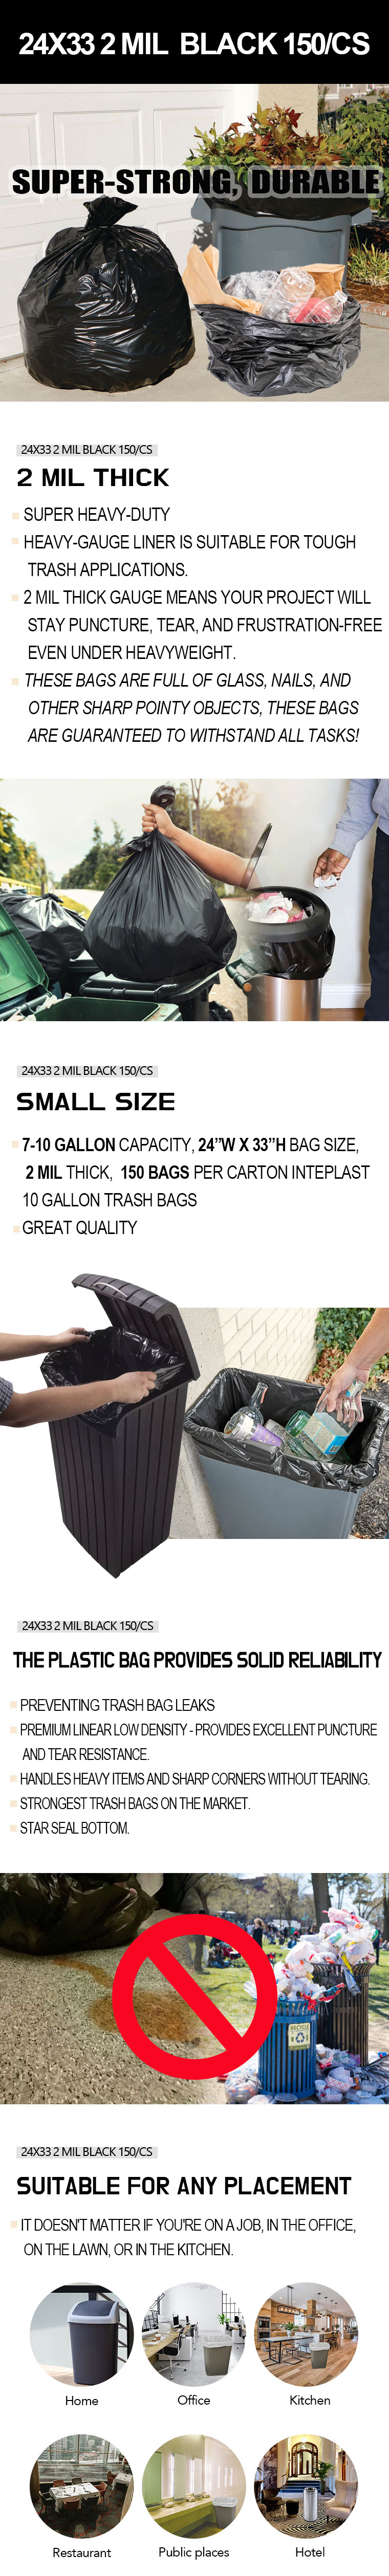 Buy Primrose Contractor Clean-Up Trash Bag 7 Bu., Black